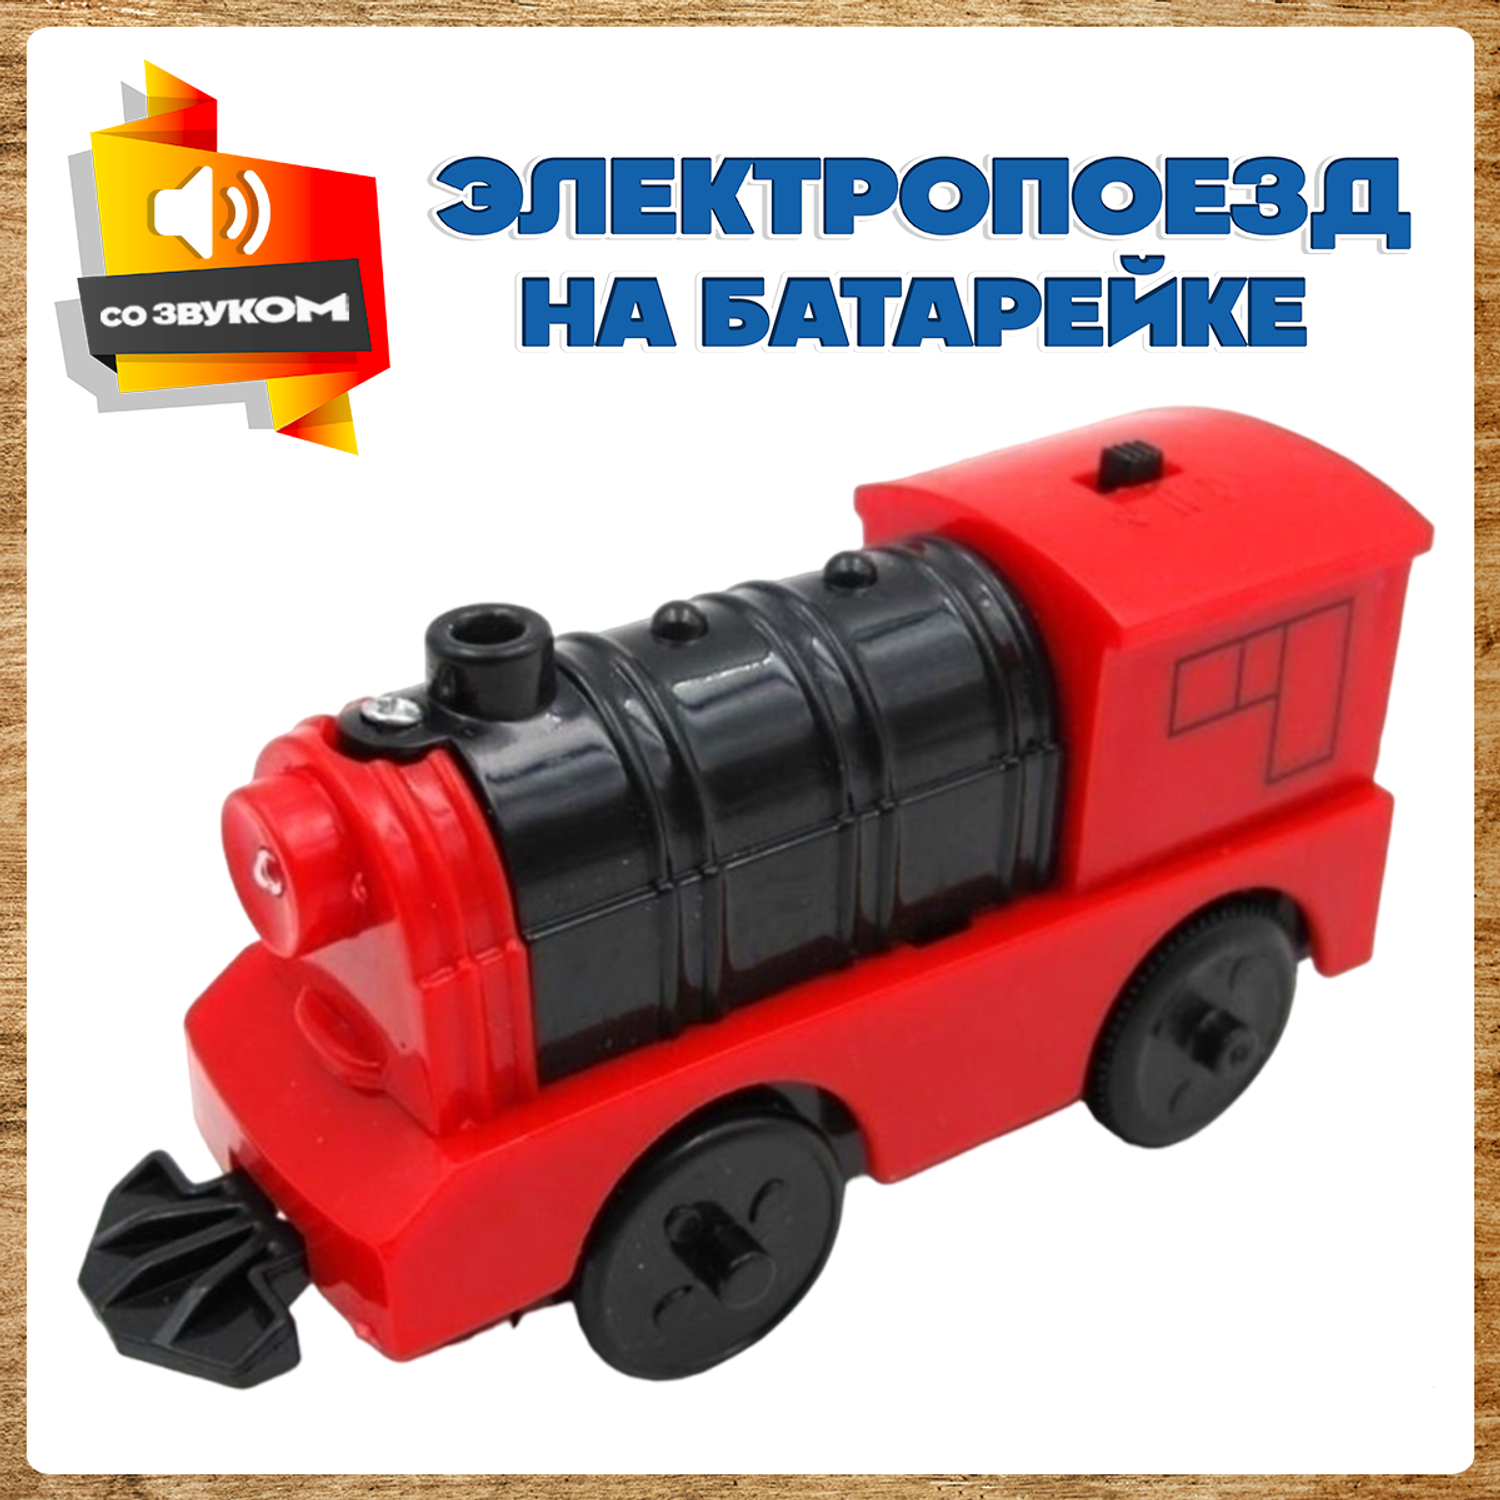 Поезд детский А.Паровозиков Со светом и звуком игрушечная модель на батарейках красный АП-001/ПЛ-00015 - фото 1